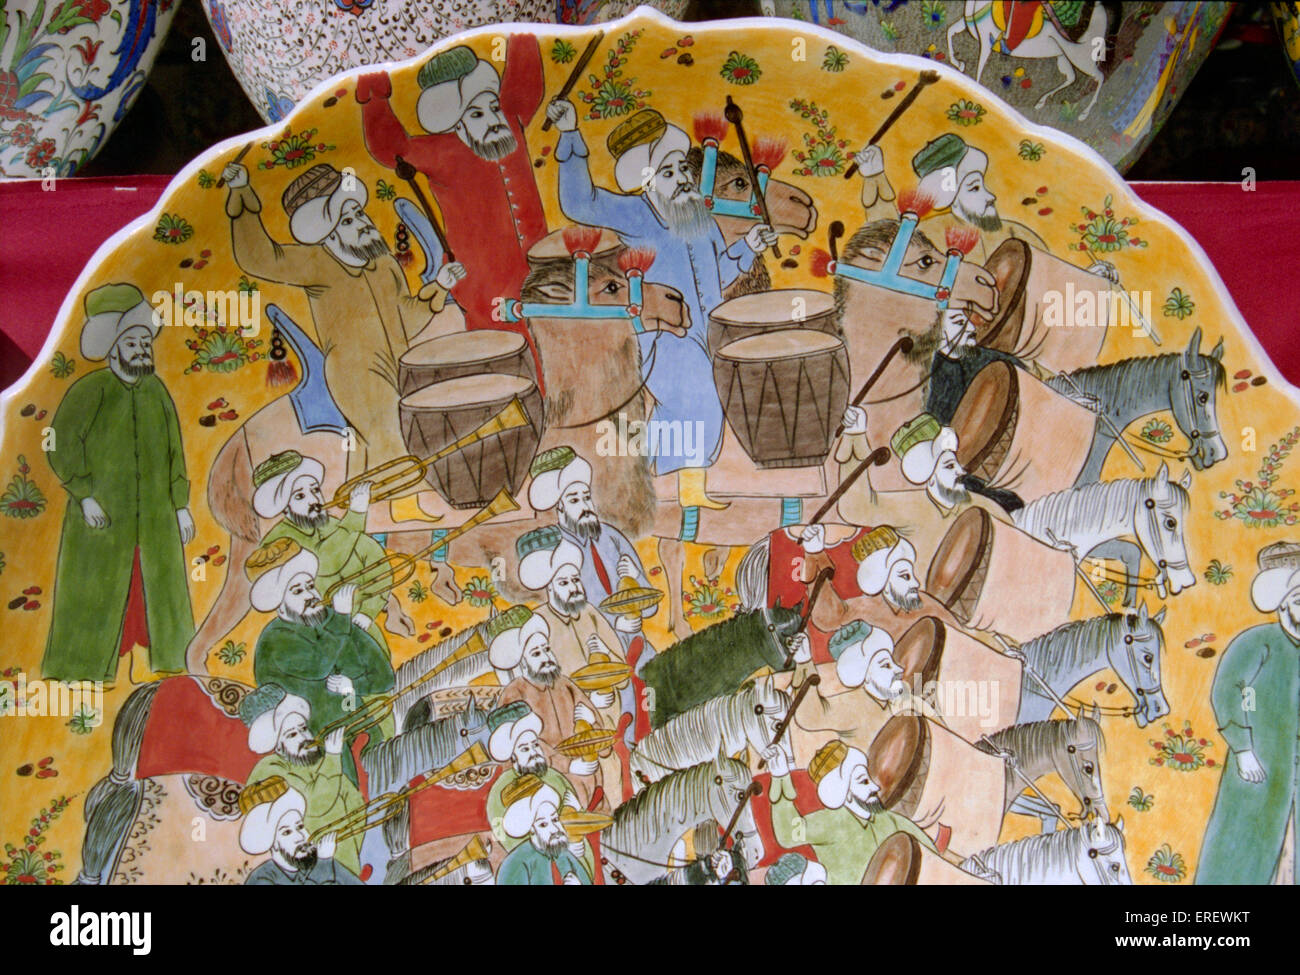 Détail de la plaque peinte montrant musiciens turcs montés sur des chevaux et des chameaux et jouant des percussions, trompettes et cymbales. Banque D'Images